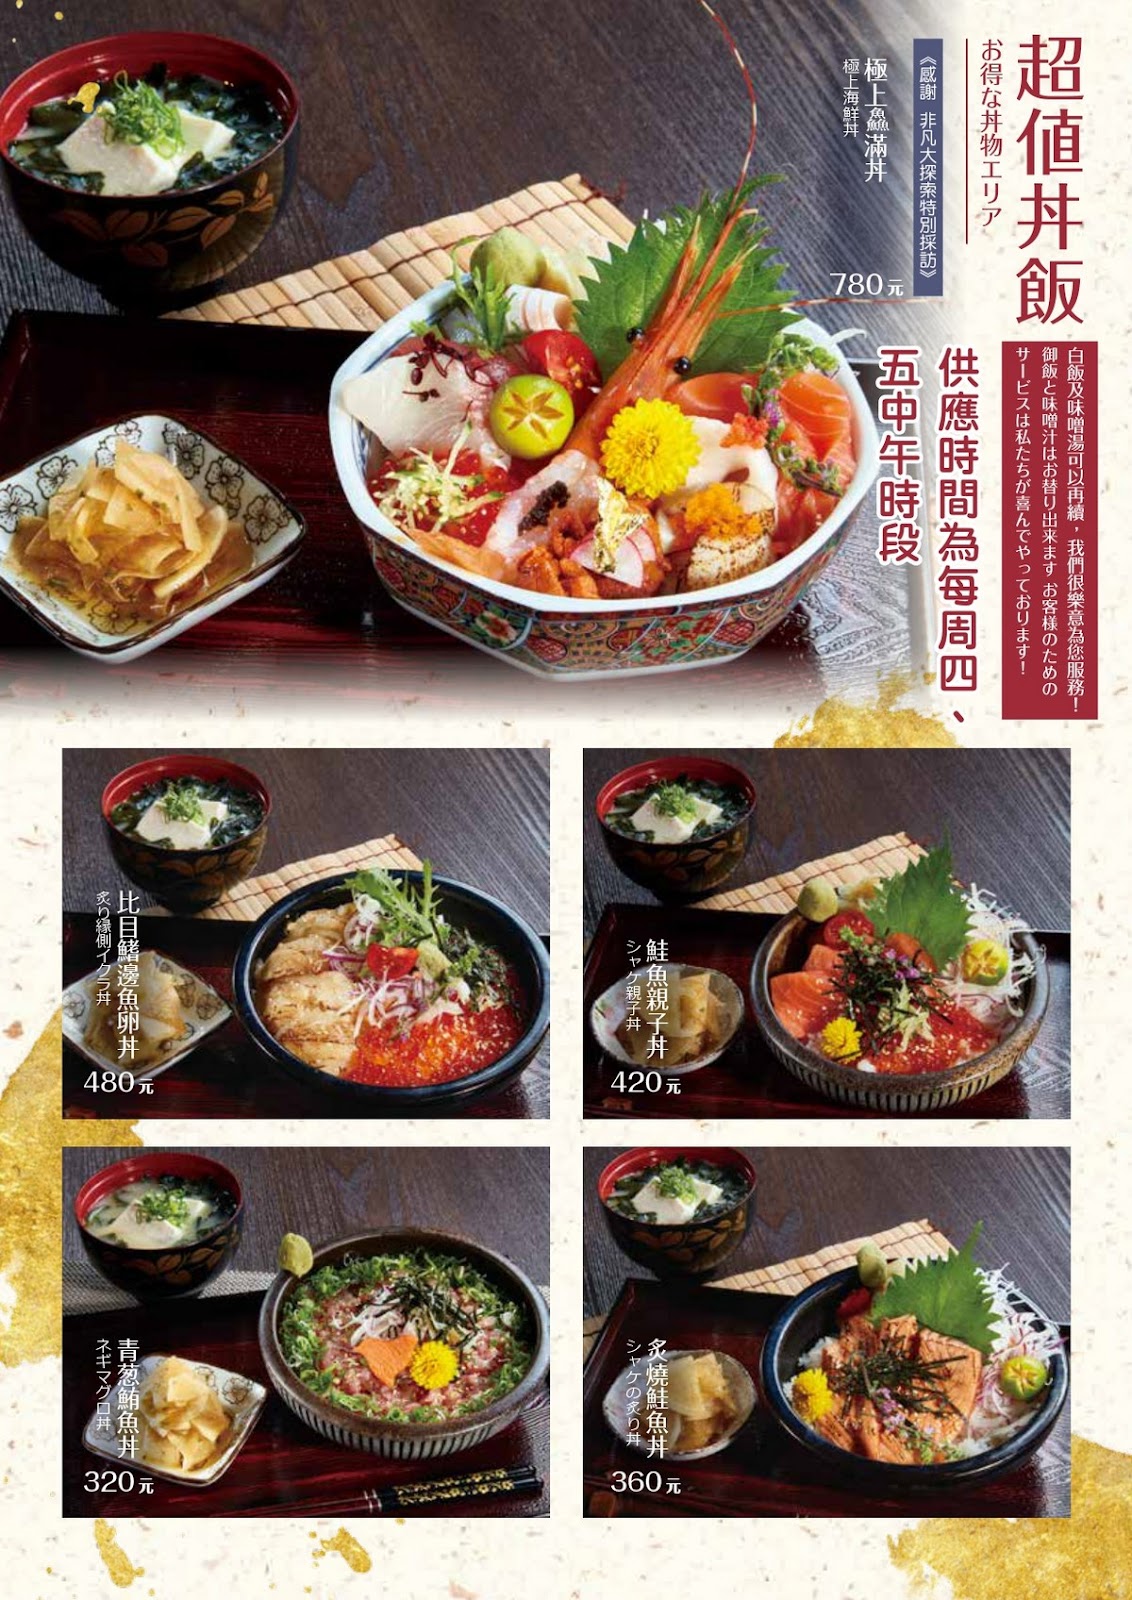  餐飲行銷-日式料理 幸和殿手作料理 部落格行銷的應用實際範例